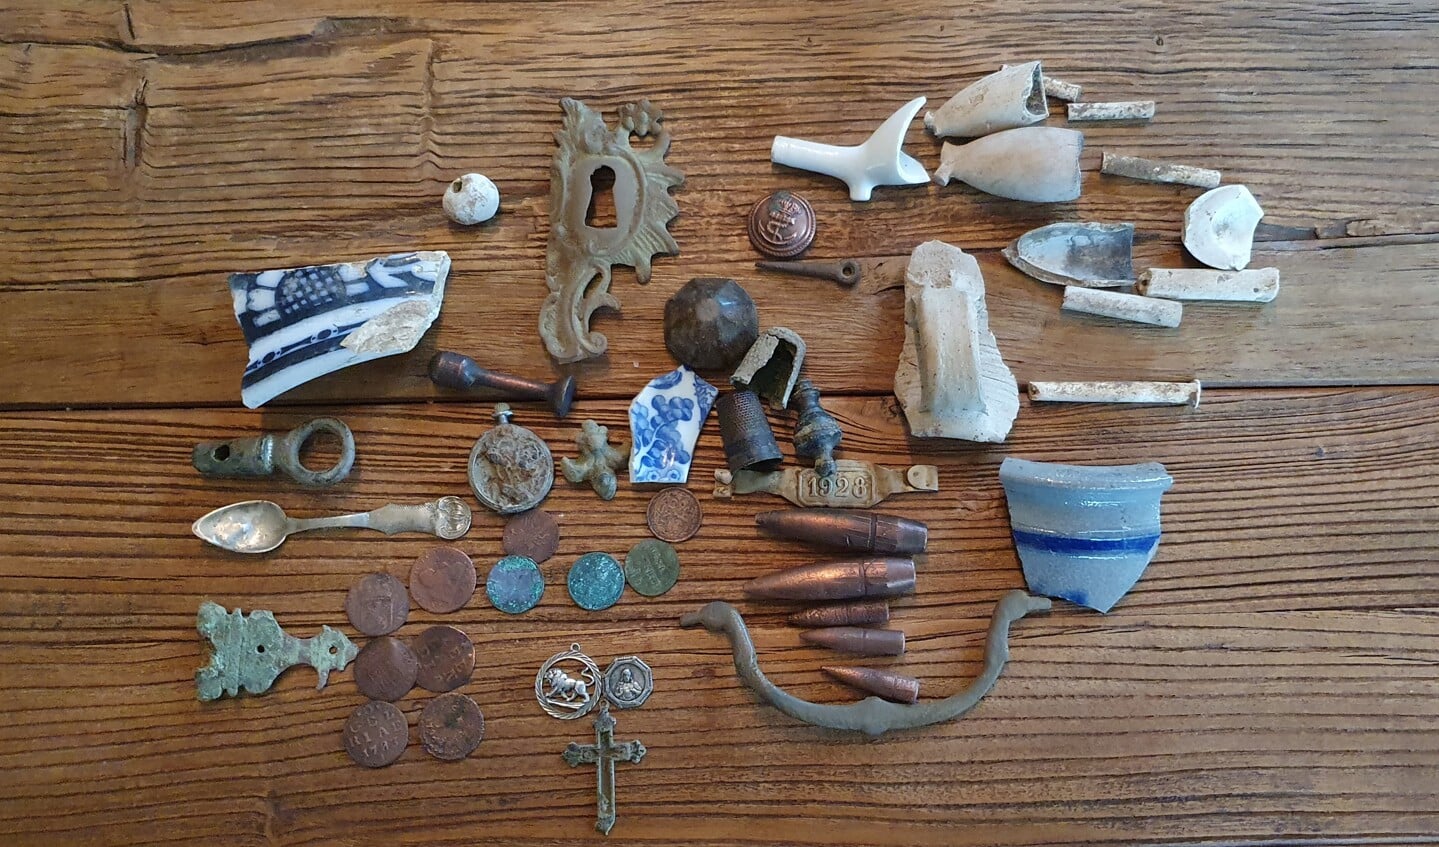 Verschillende voorwerpen, waaronder scherven, hangertjes, munten en kogels die Fred Cramer gevonden heeft met zijn blote oog of met zijn metaaldetector. Foto: Alice Rouwhorst